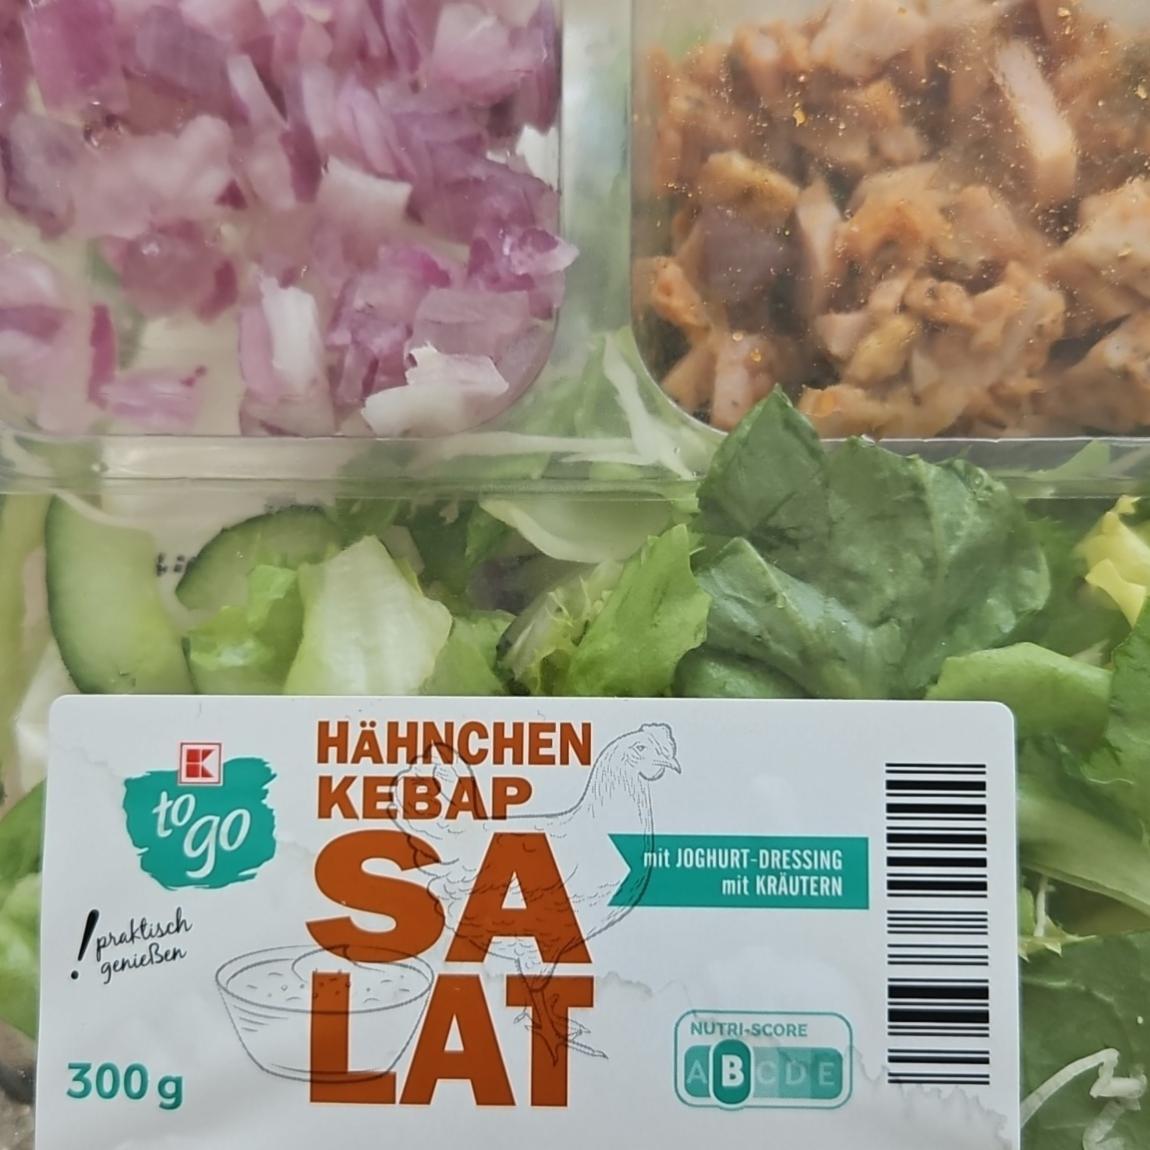 Fotografie - Hähnchen kebap Salat mit Joghurt dressing mit Kräutern K-to go